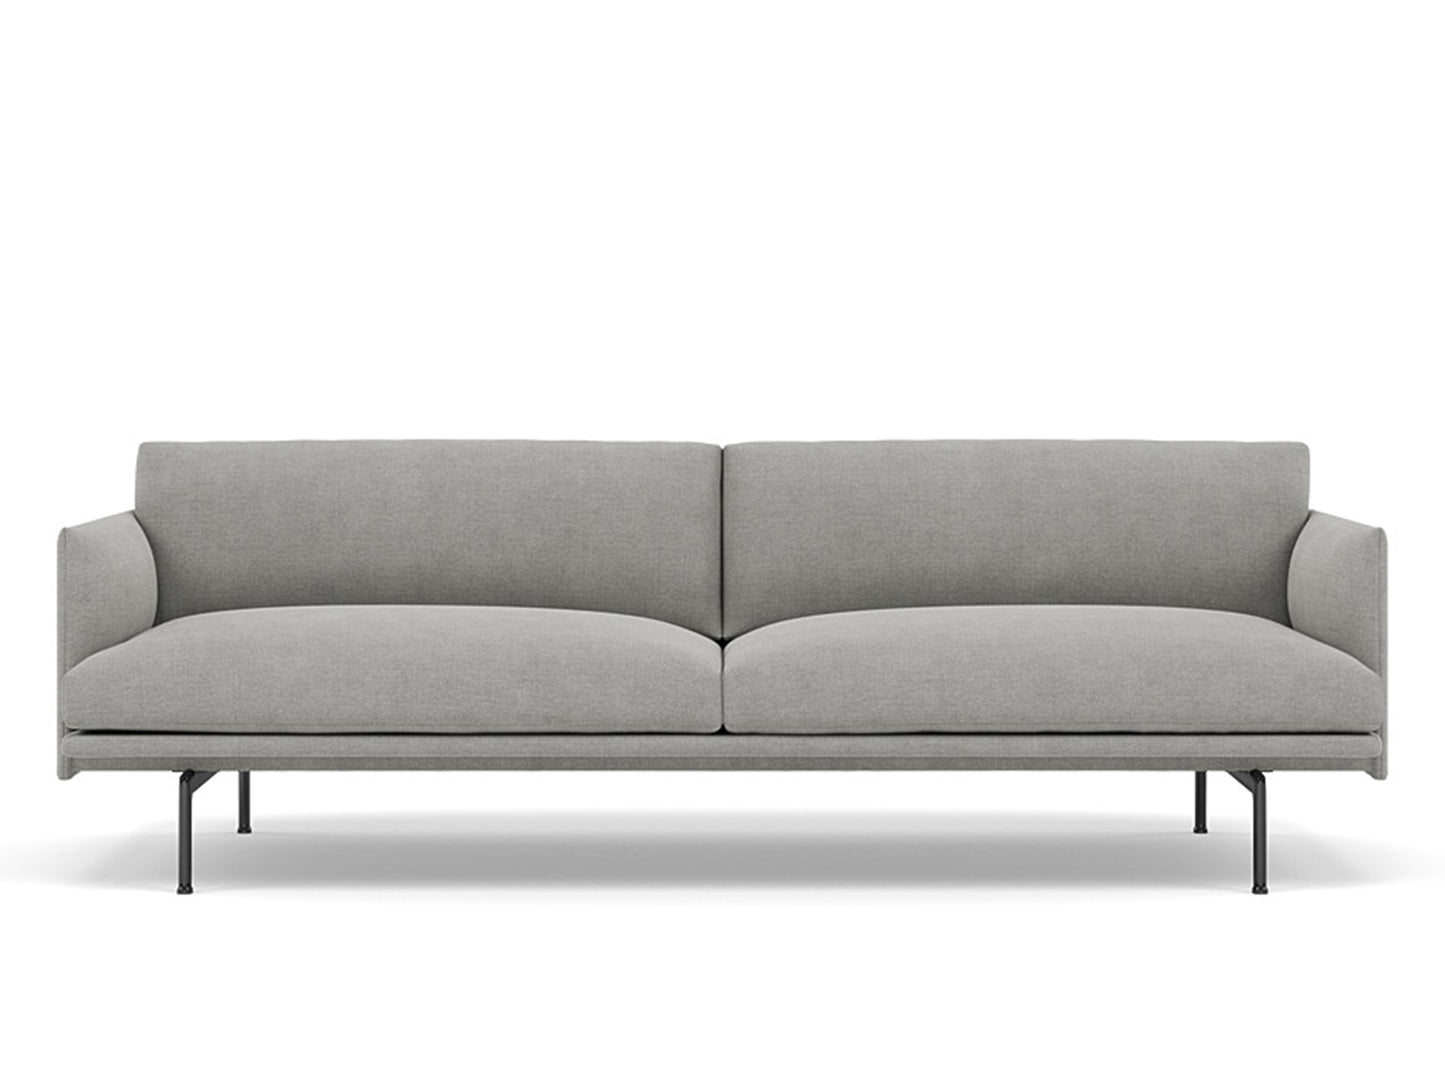 Muuto Outline 2 Seater Sofa - Polished Aluminium Base / fiord 151